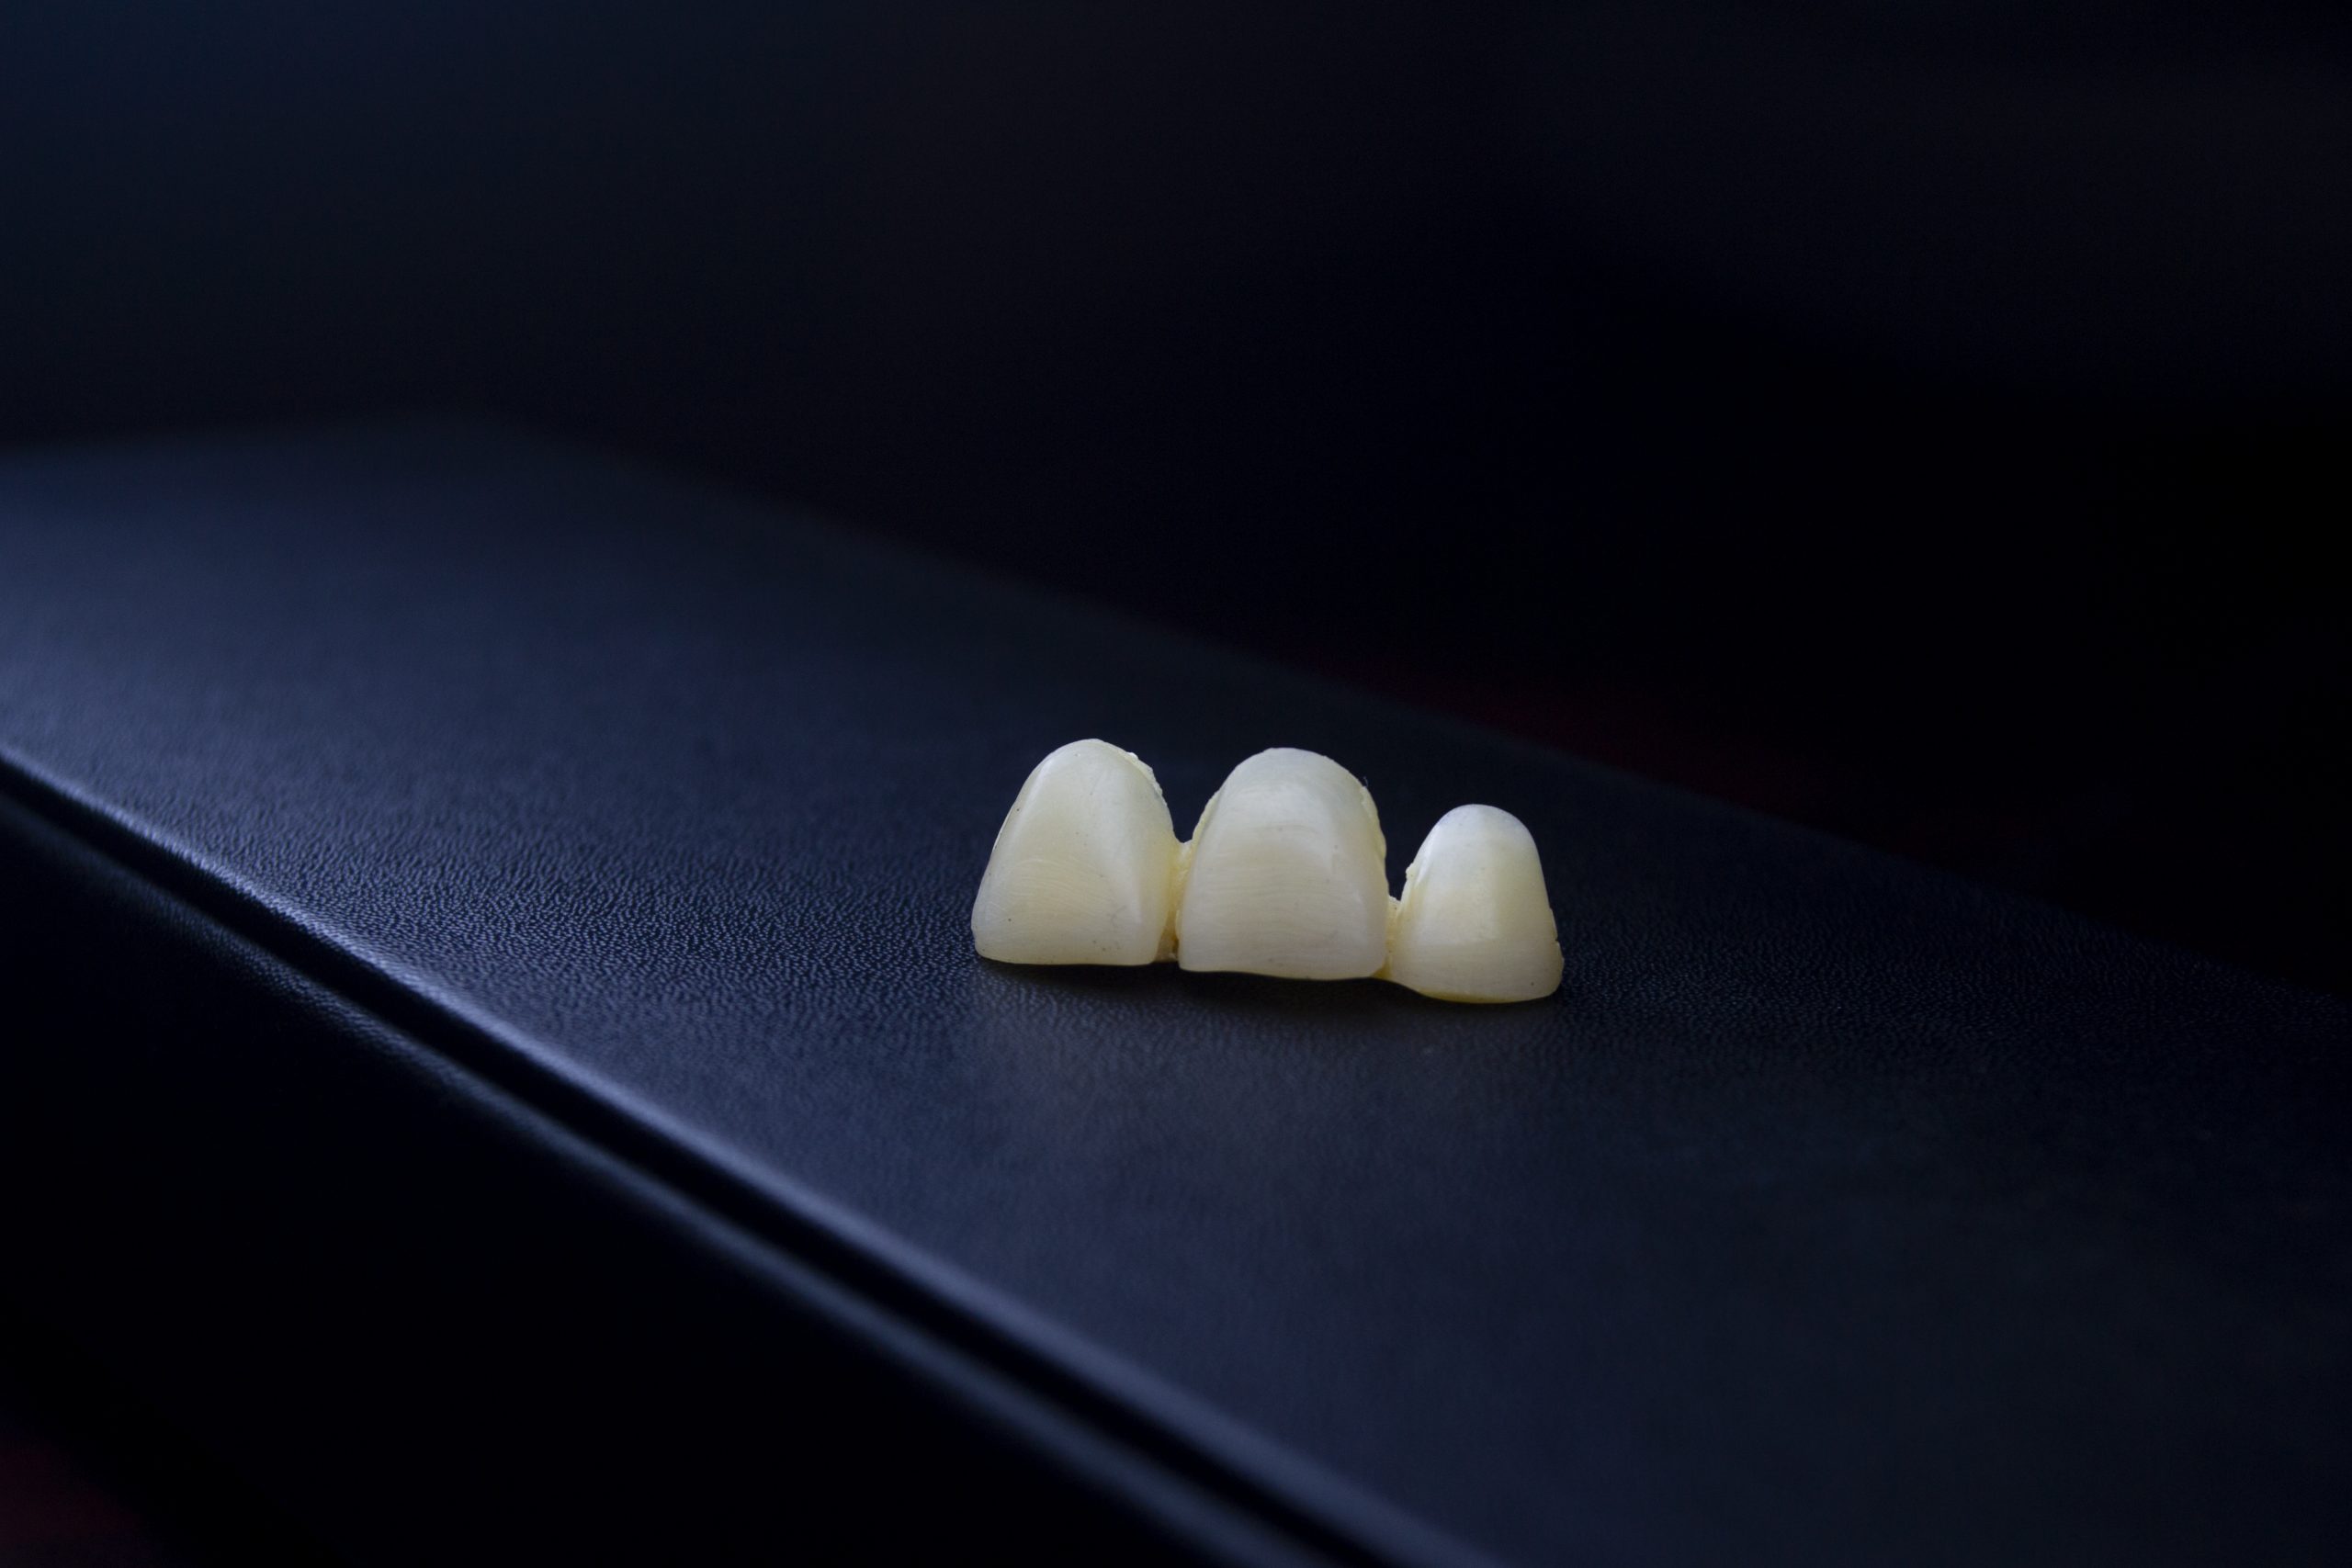 artificial teeth